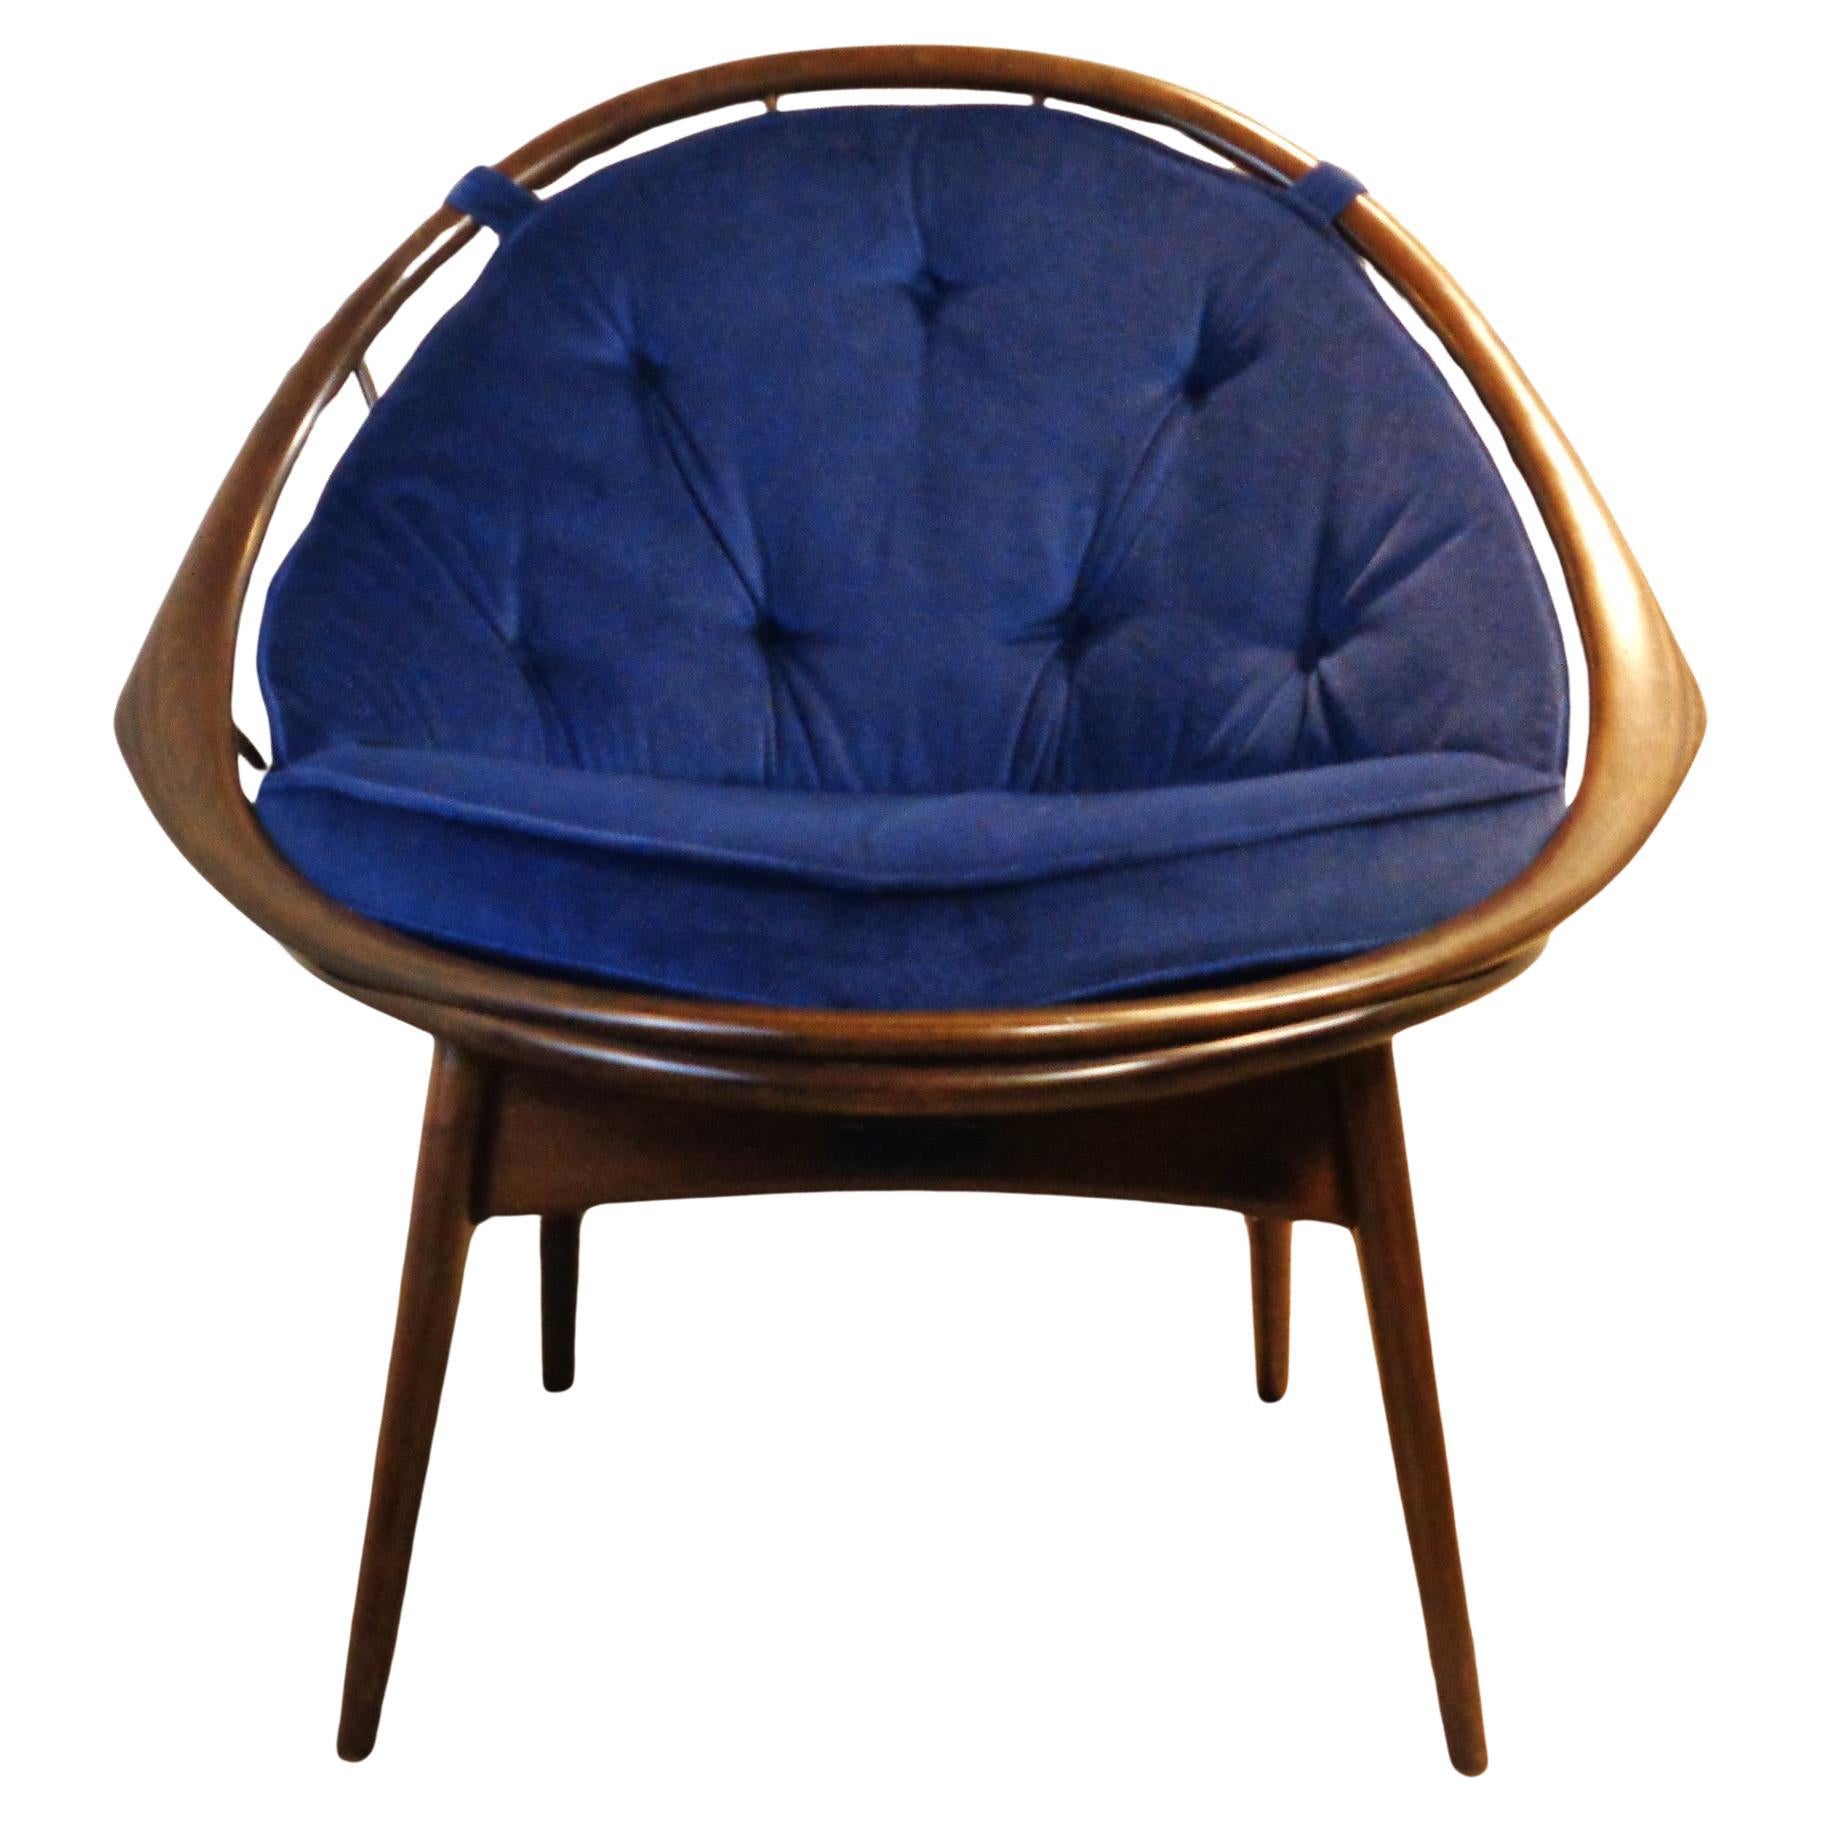 Ib Kofod-Larsen Peacock Chair Selig Denmark, 1950-1960 For Sale